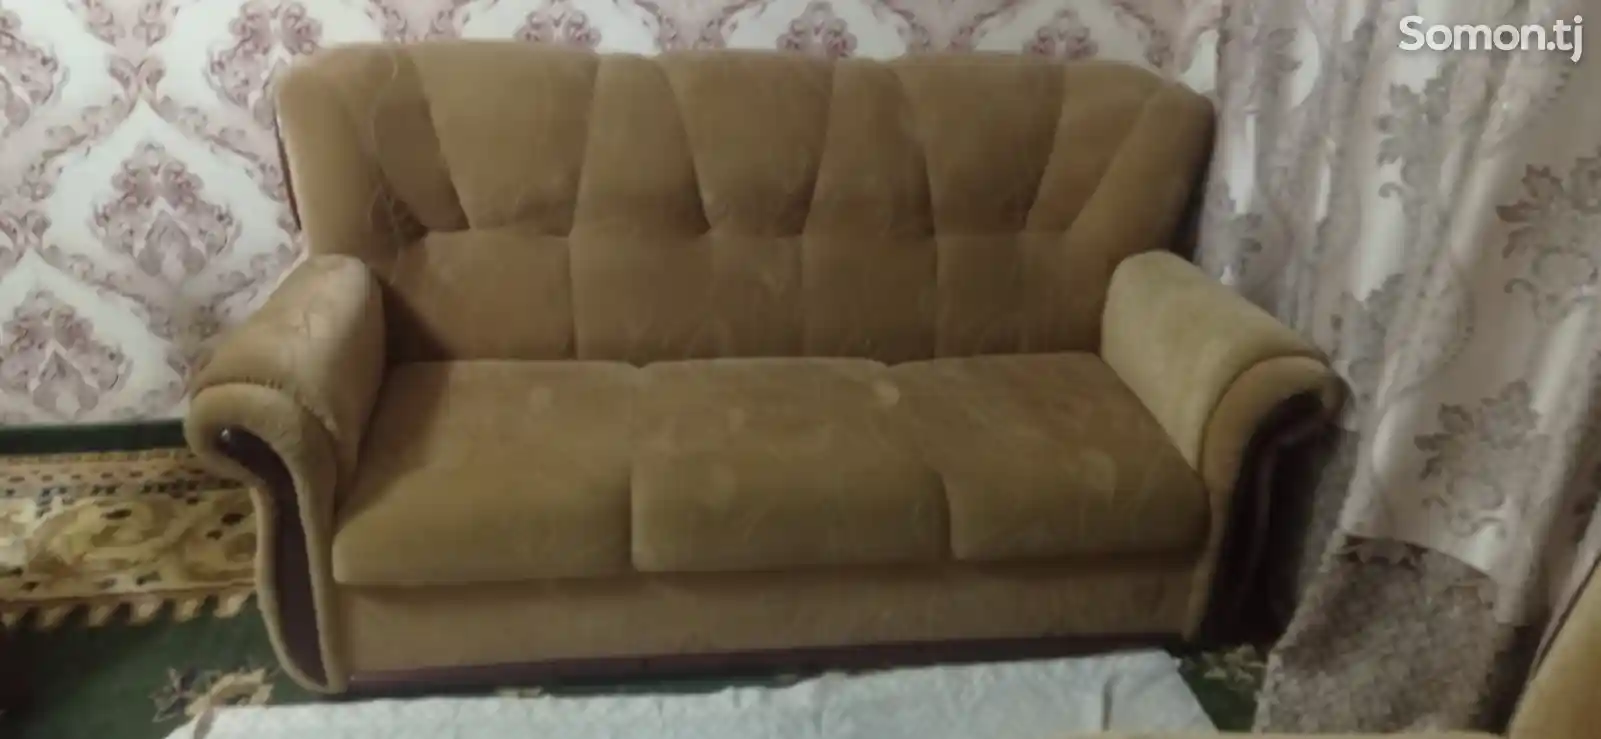 Кровать и диван с креслами-4